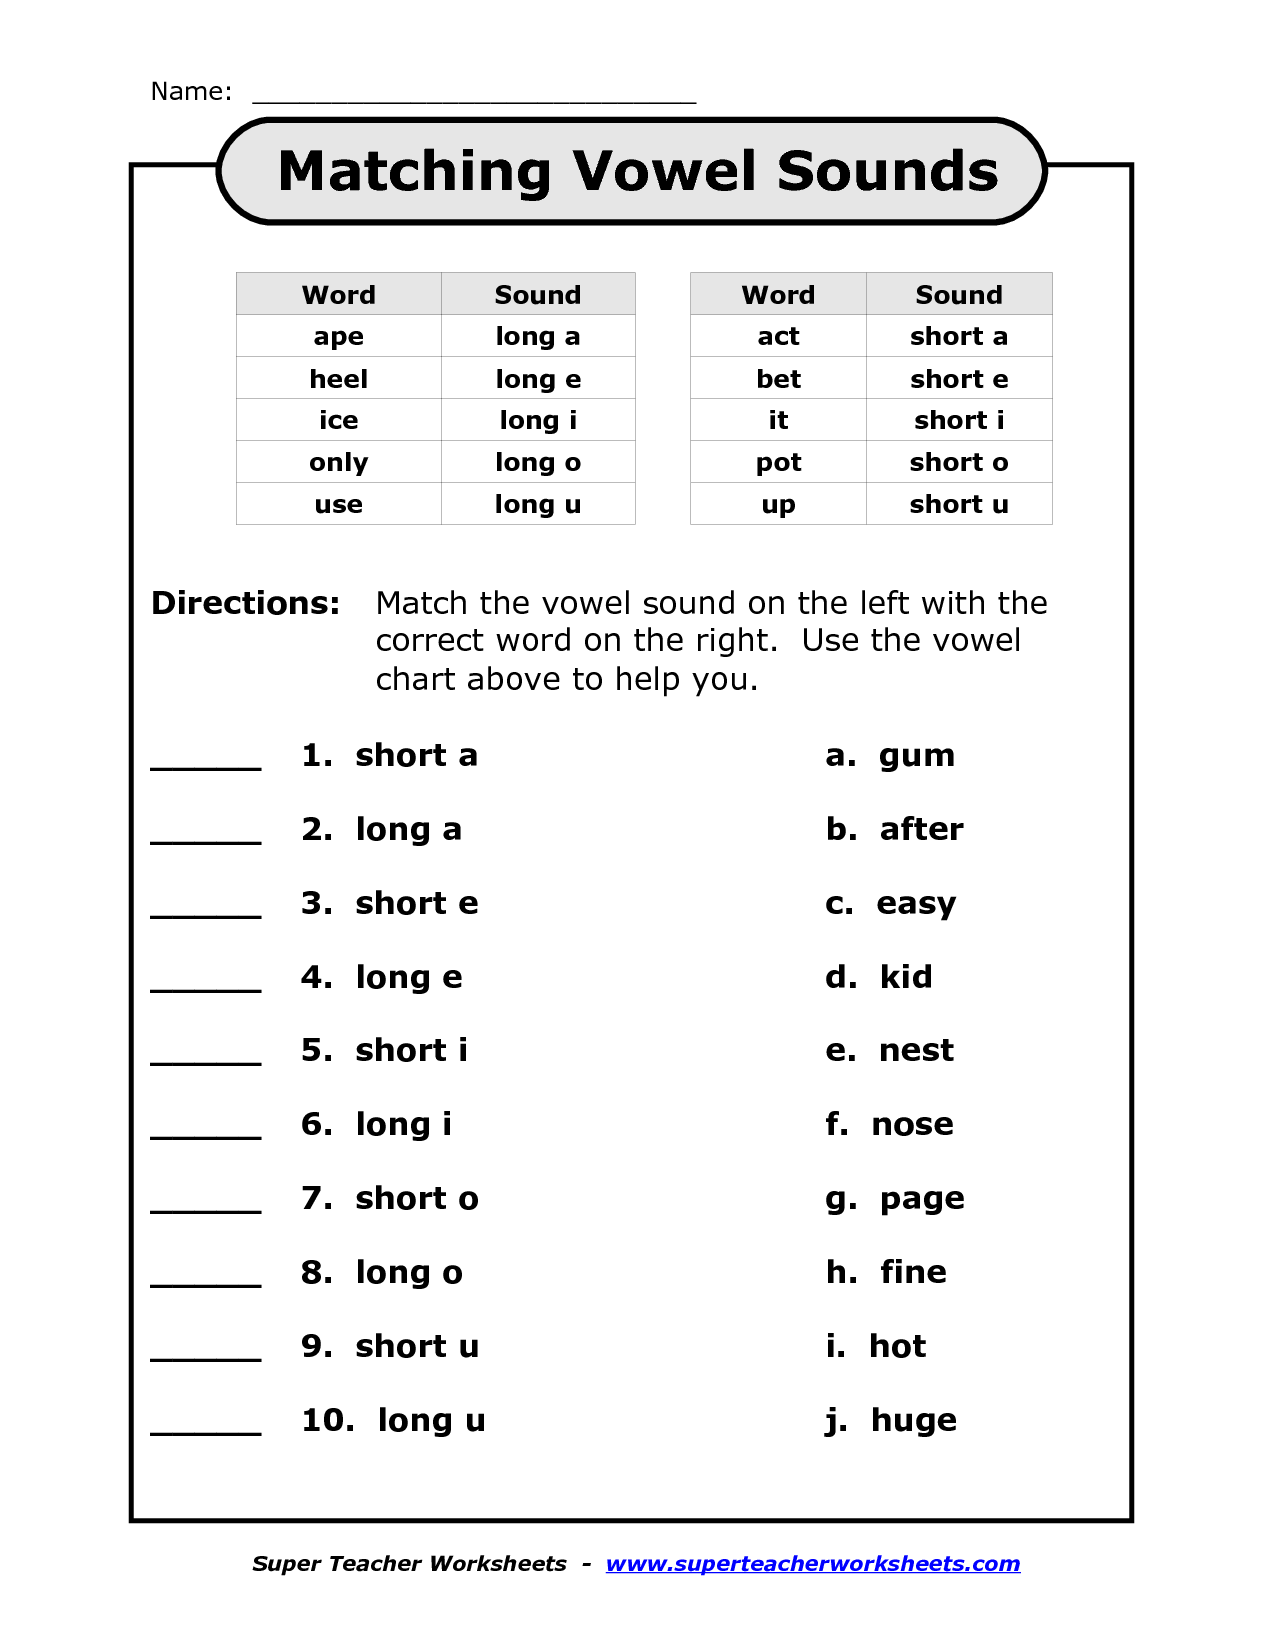 Short Vowel Worksheets 5th Grade